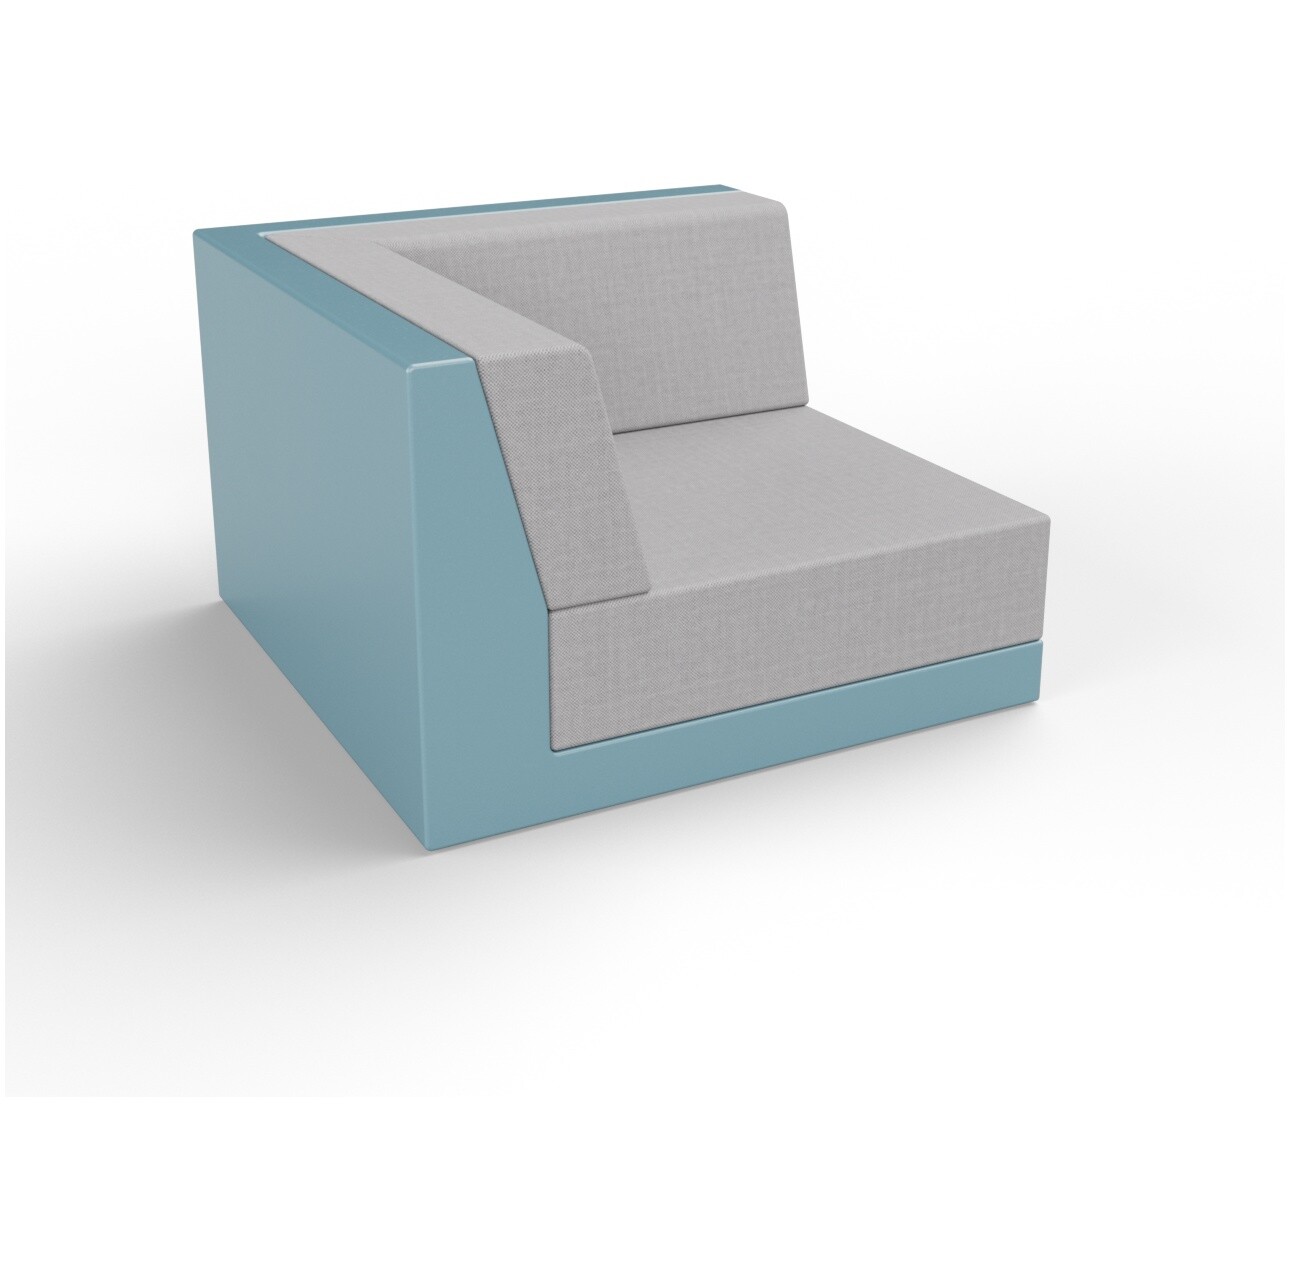 Модуль дивана угловой пластиковый с подушками бирюзовый, серый Quarter modular